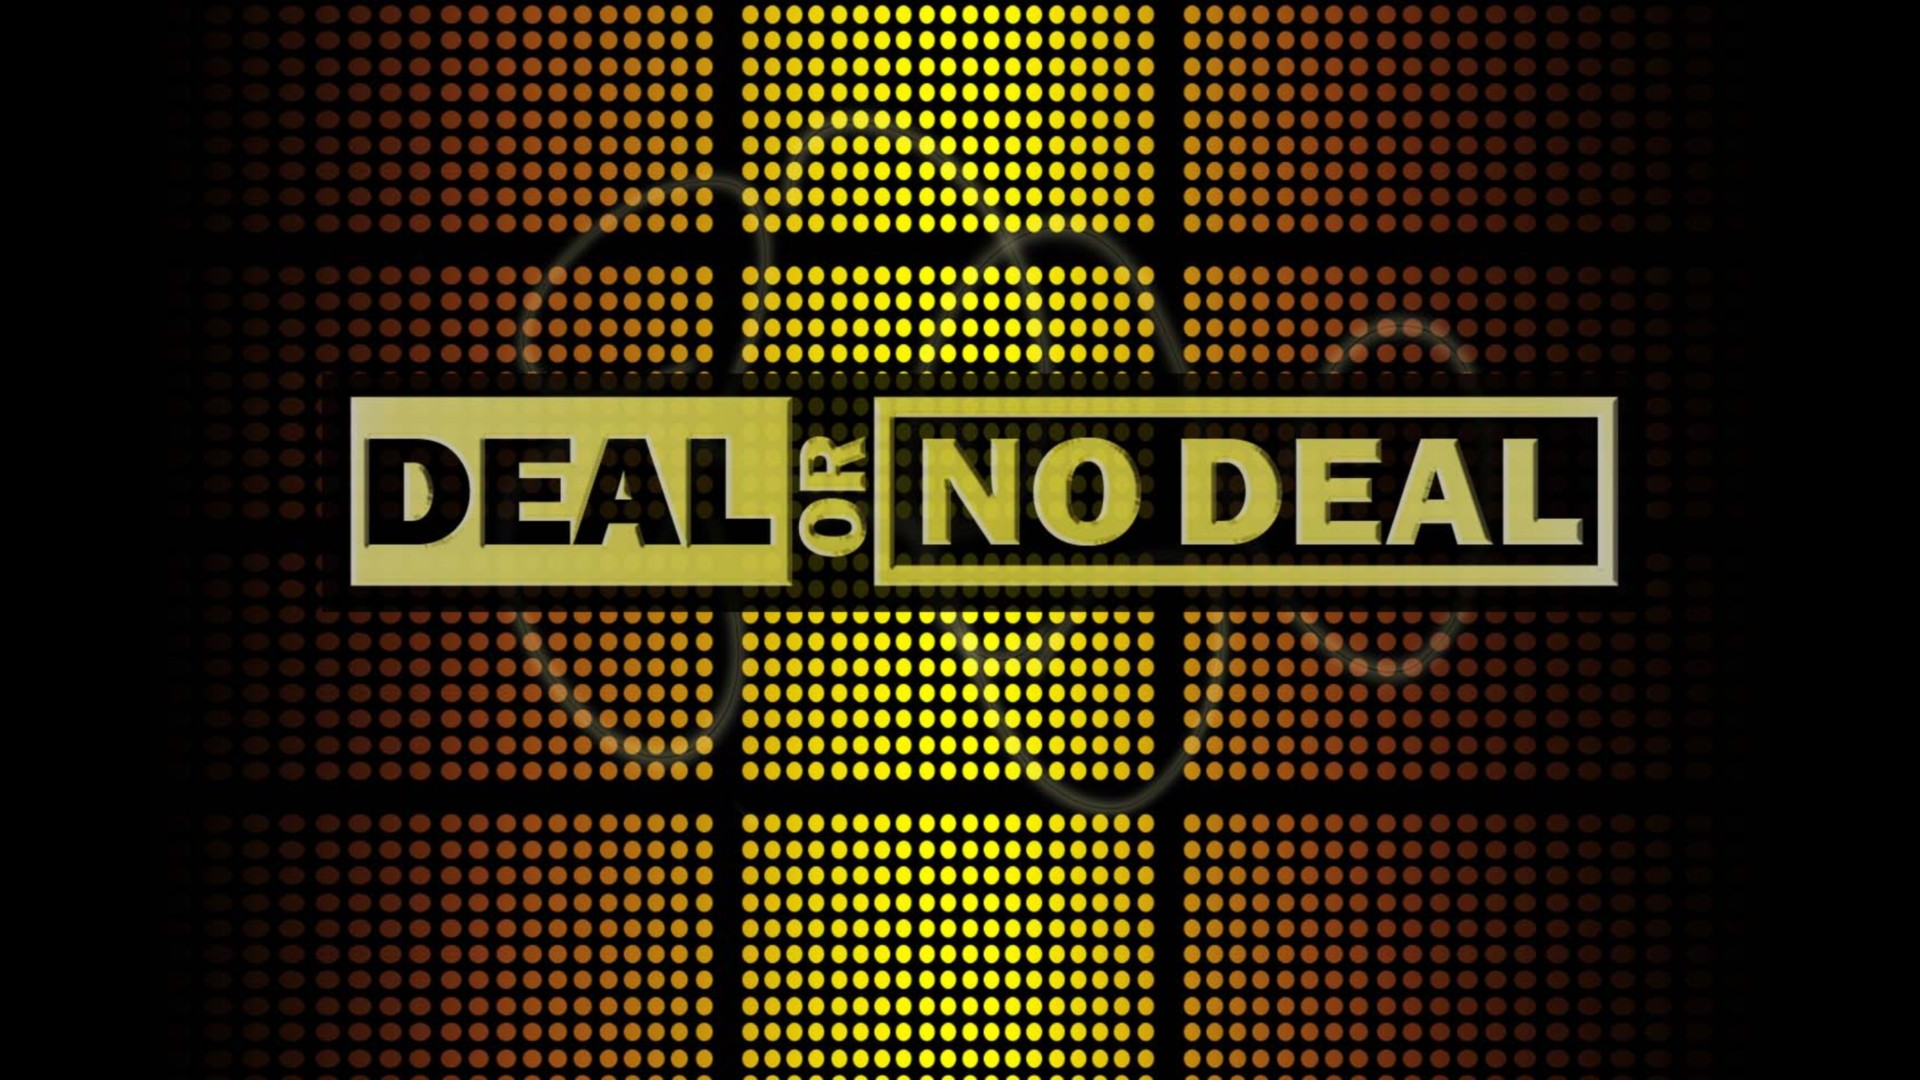 Deal or no deal season 3 episode 6